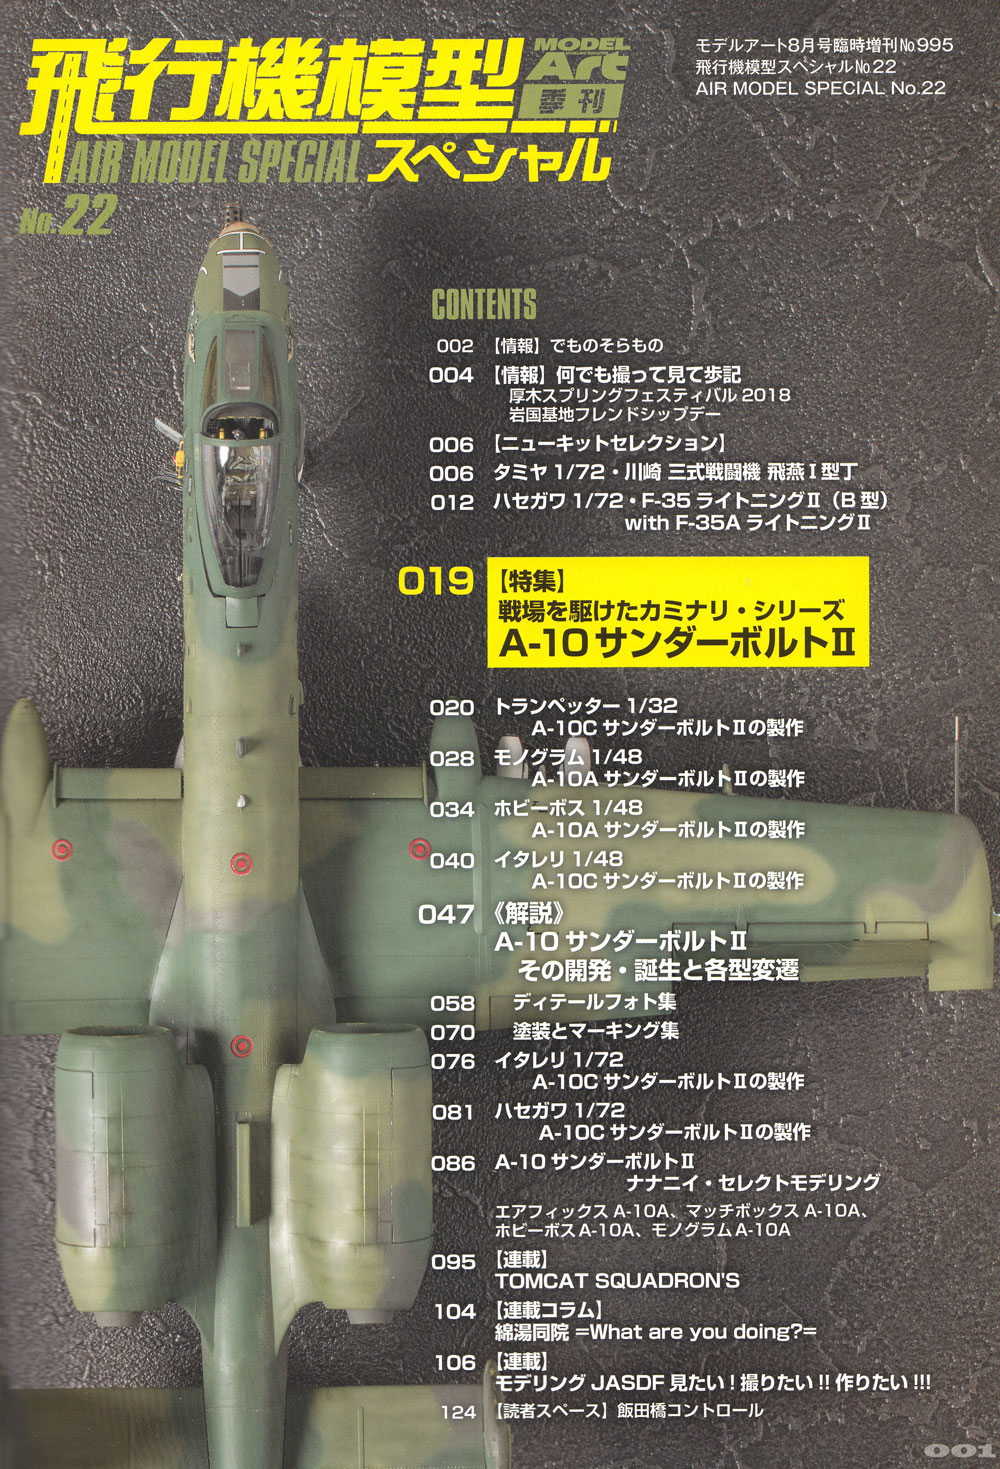 飛行機模型スペシャル 22 戦場を駆けたカミナリ シリーズ 2 フェアチャイルド・リパブリック A-10 サンダーボルト 2 本 (モデルアート 飛行機模型スペシャル No.022) 商品画像_1